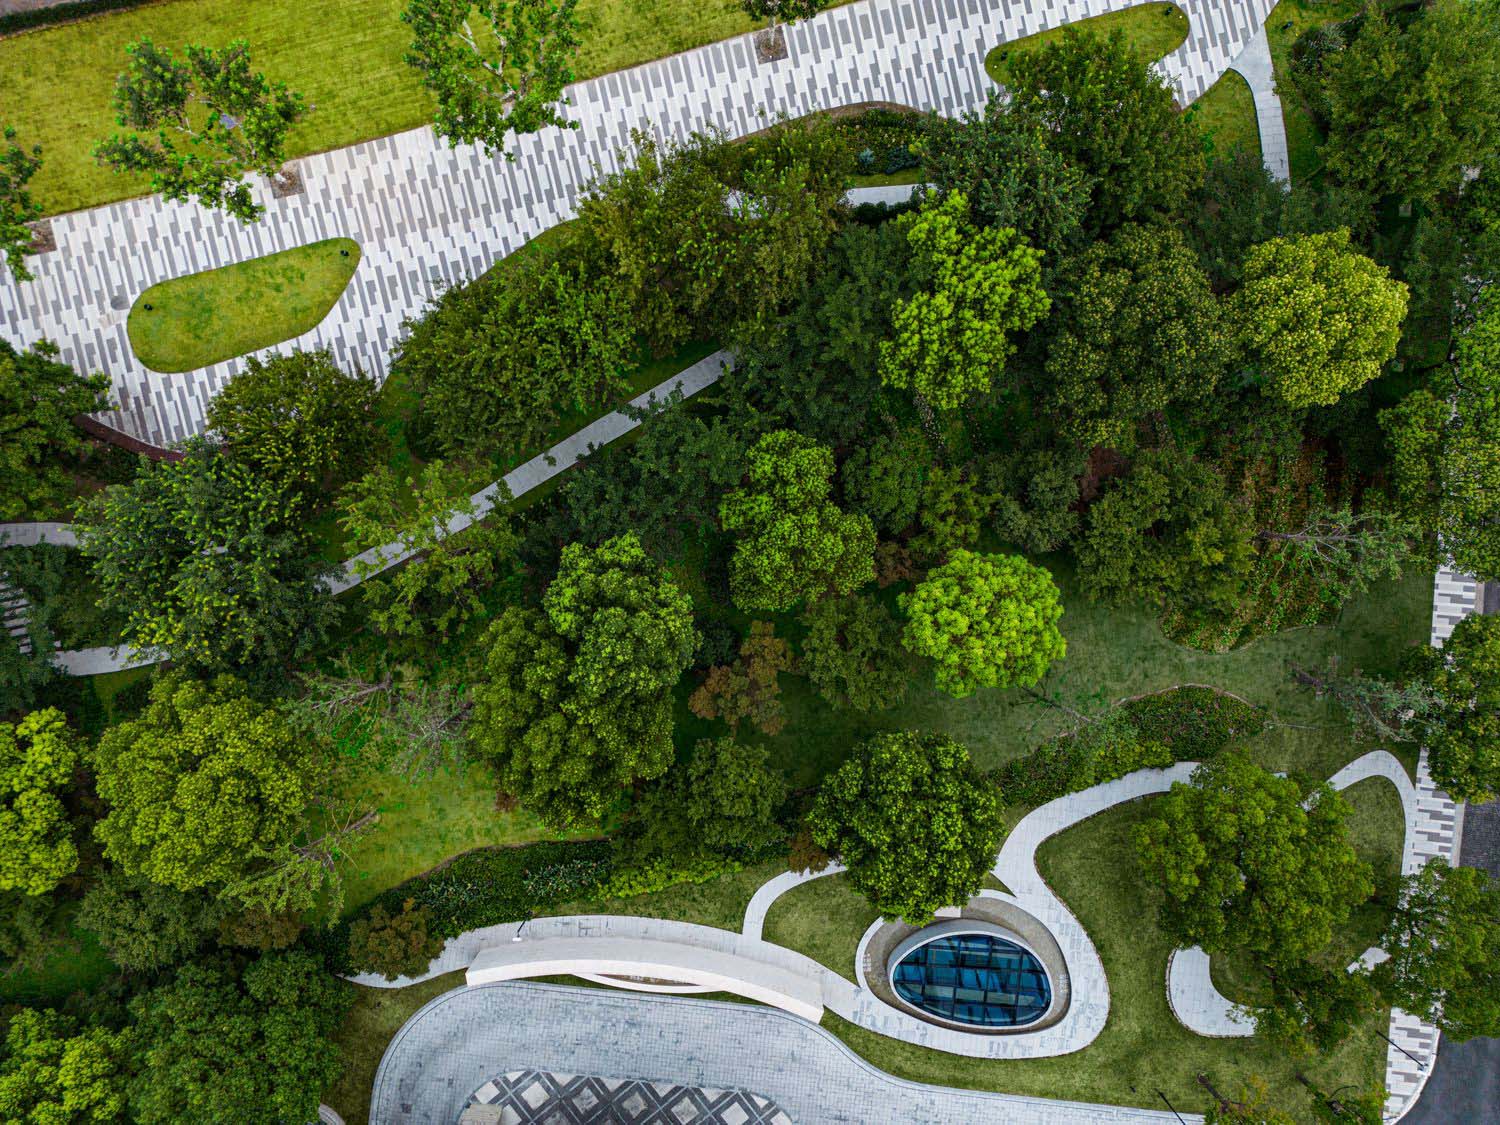 辦公建築設計,建築設計,辦公景觀設計,園區景觀設計,景觀設計,上海,和光天地綠色公園式生態辦公建築,MAS奇皇室內設計